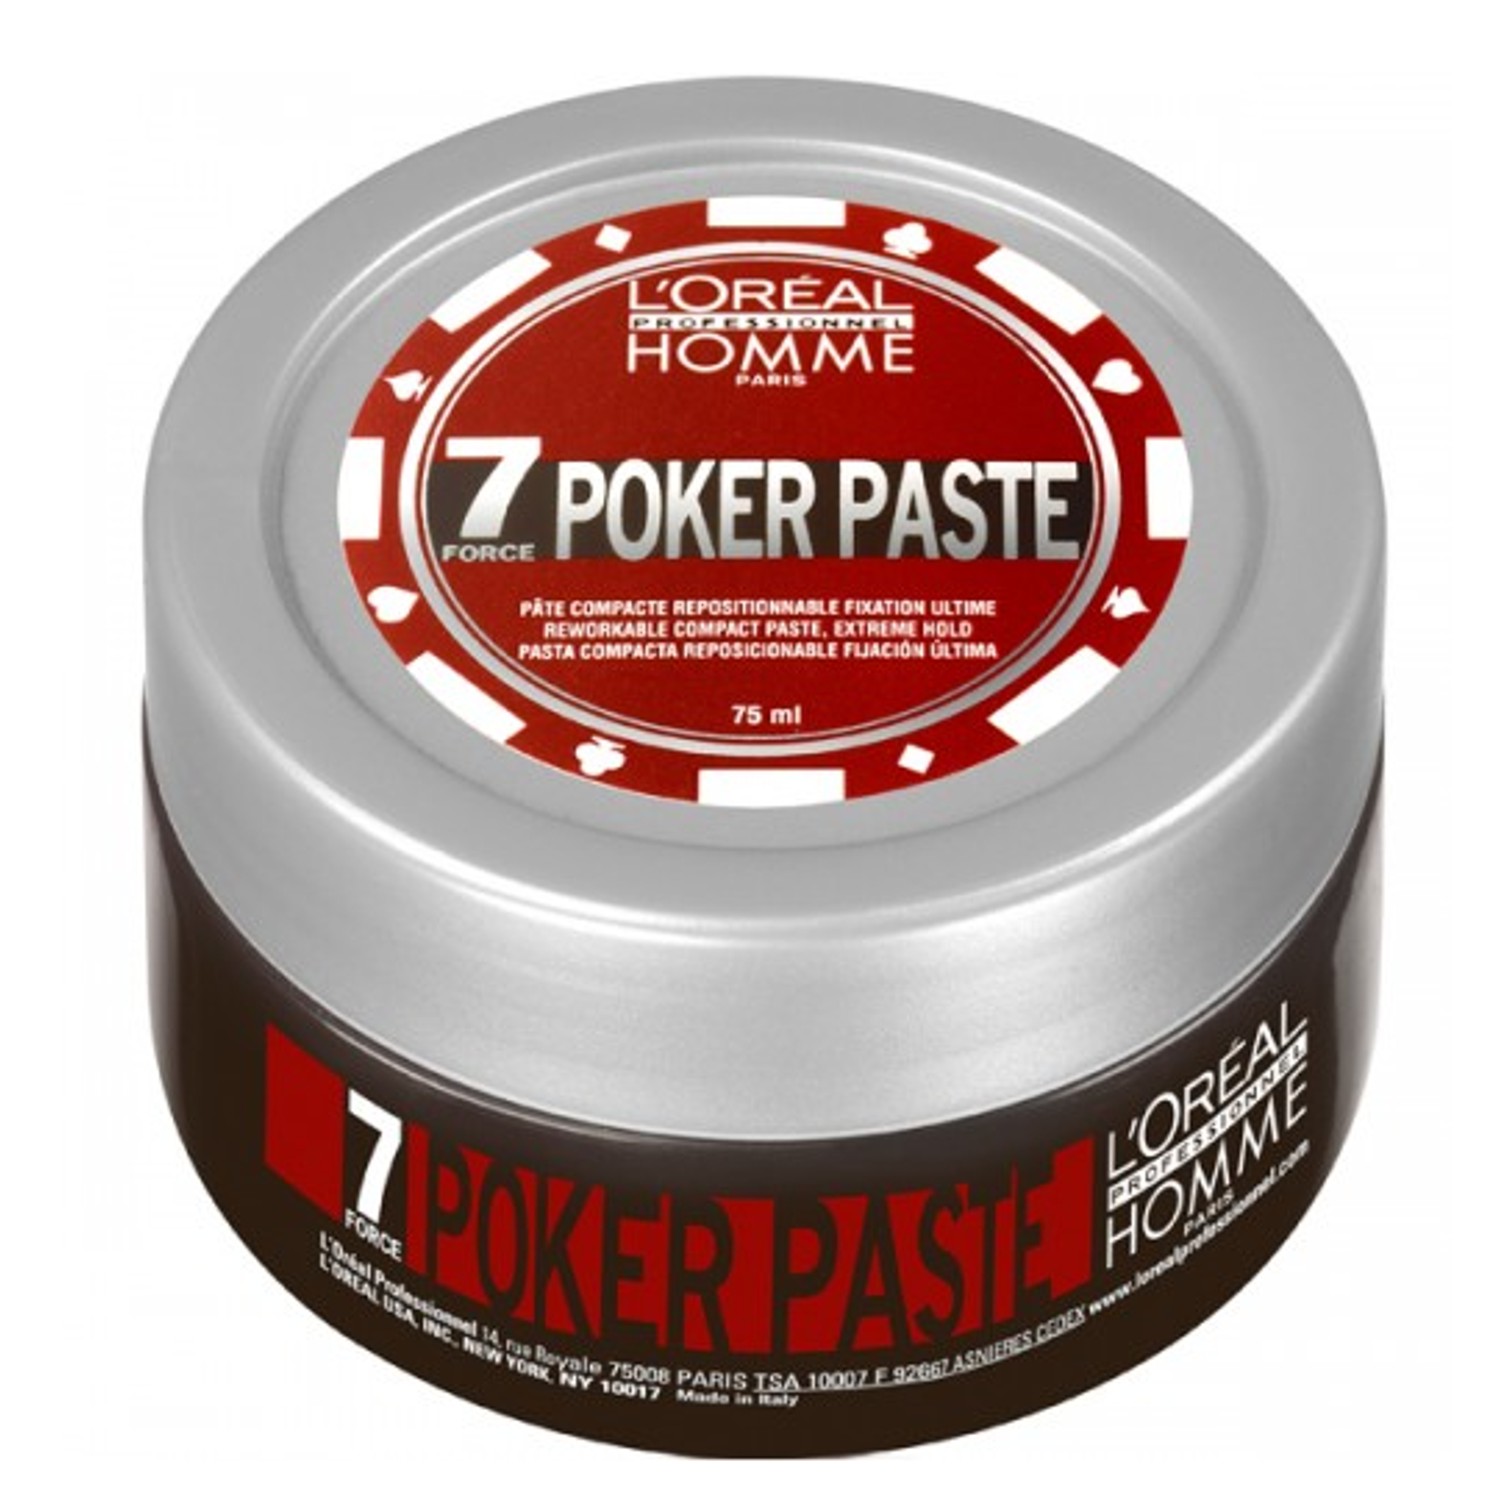 L'ORÉAL HOMME Poker Paste 75 ml